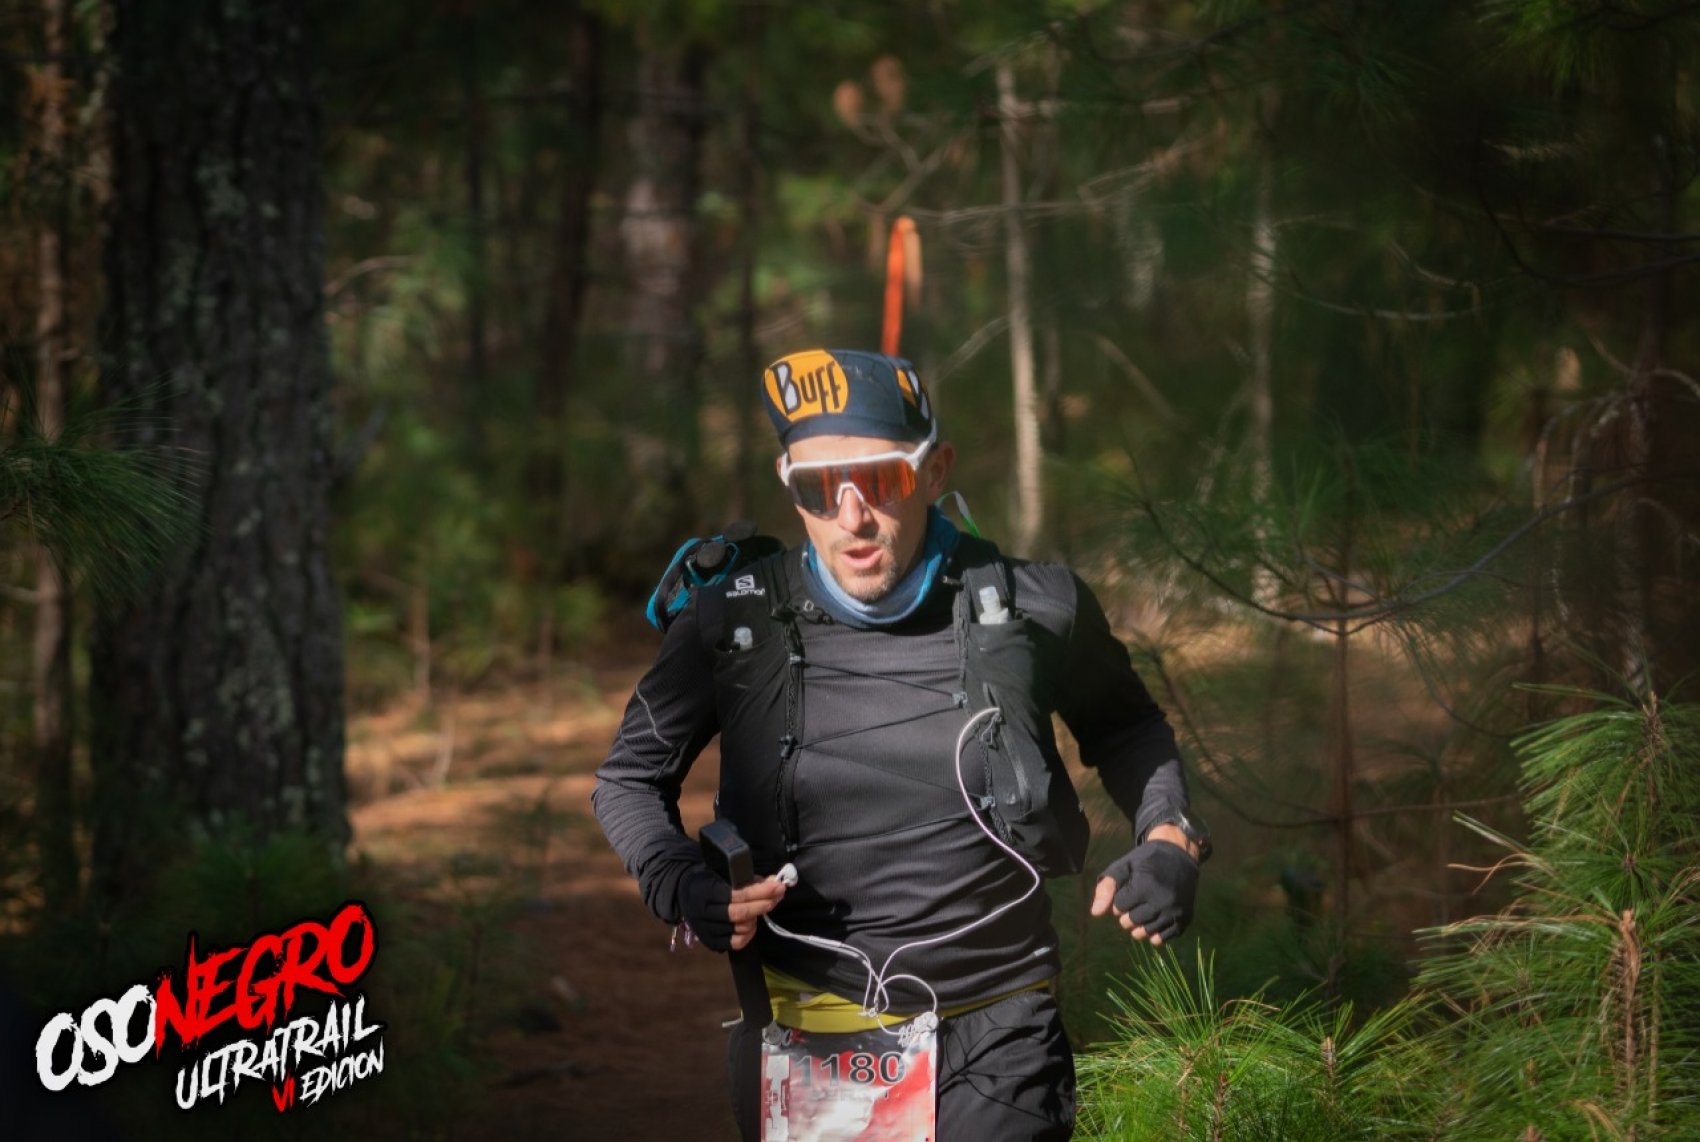 Oso Negro ® Ultra Trail 75K